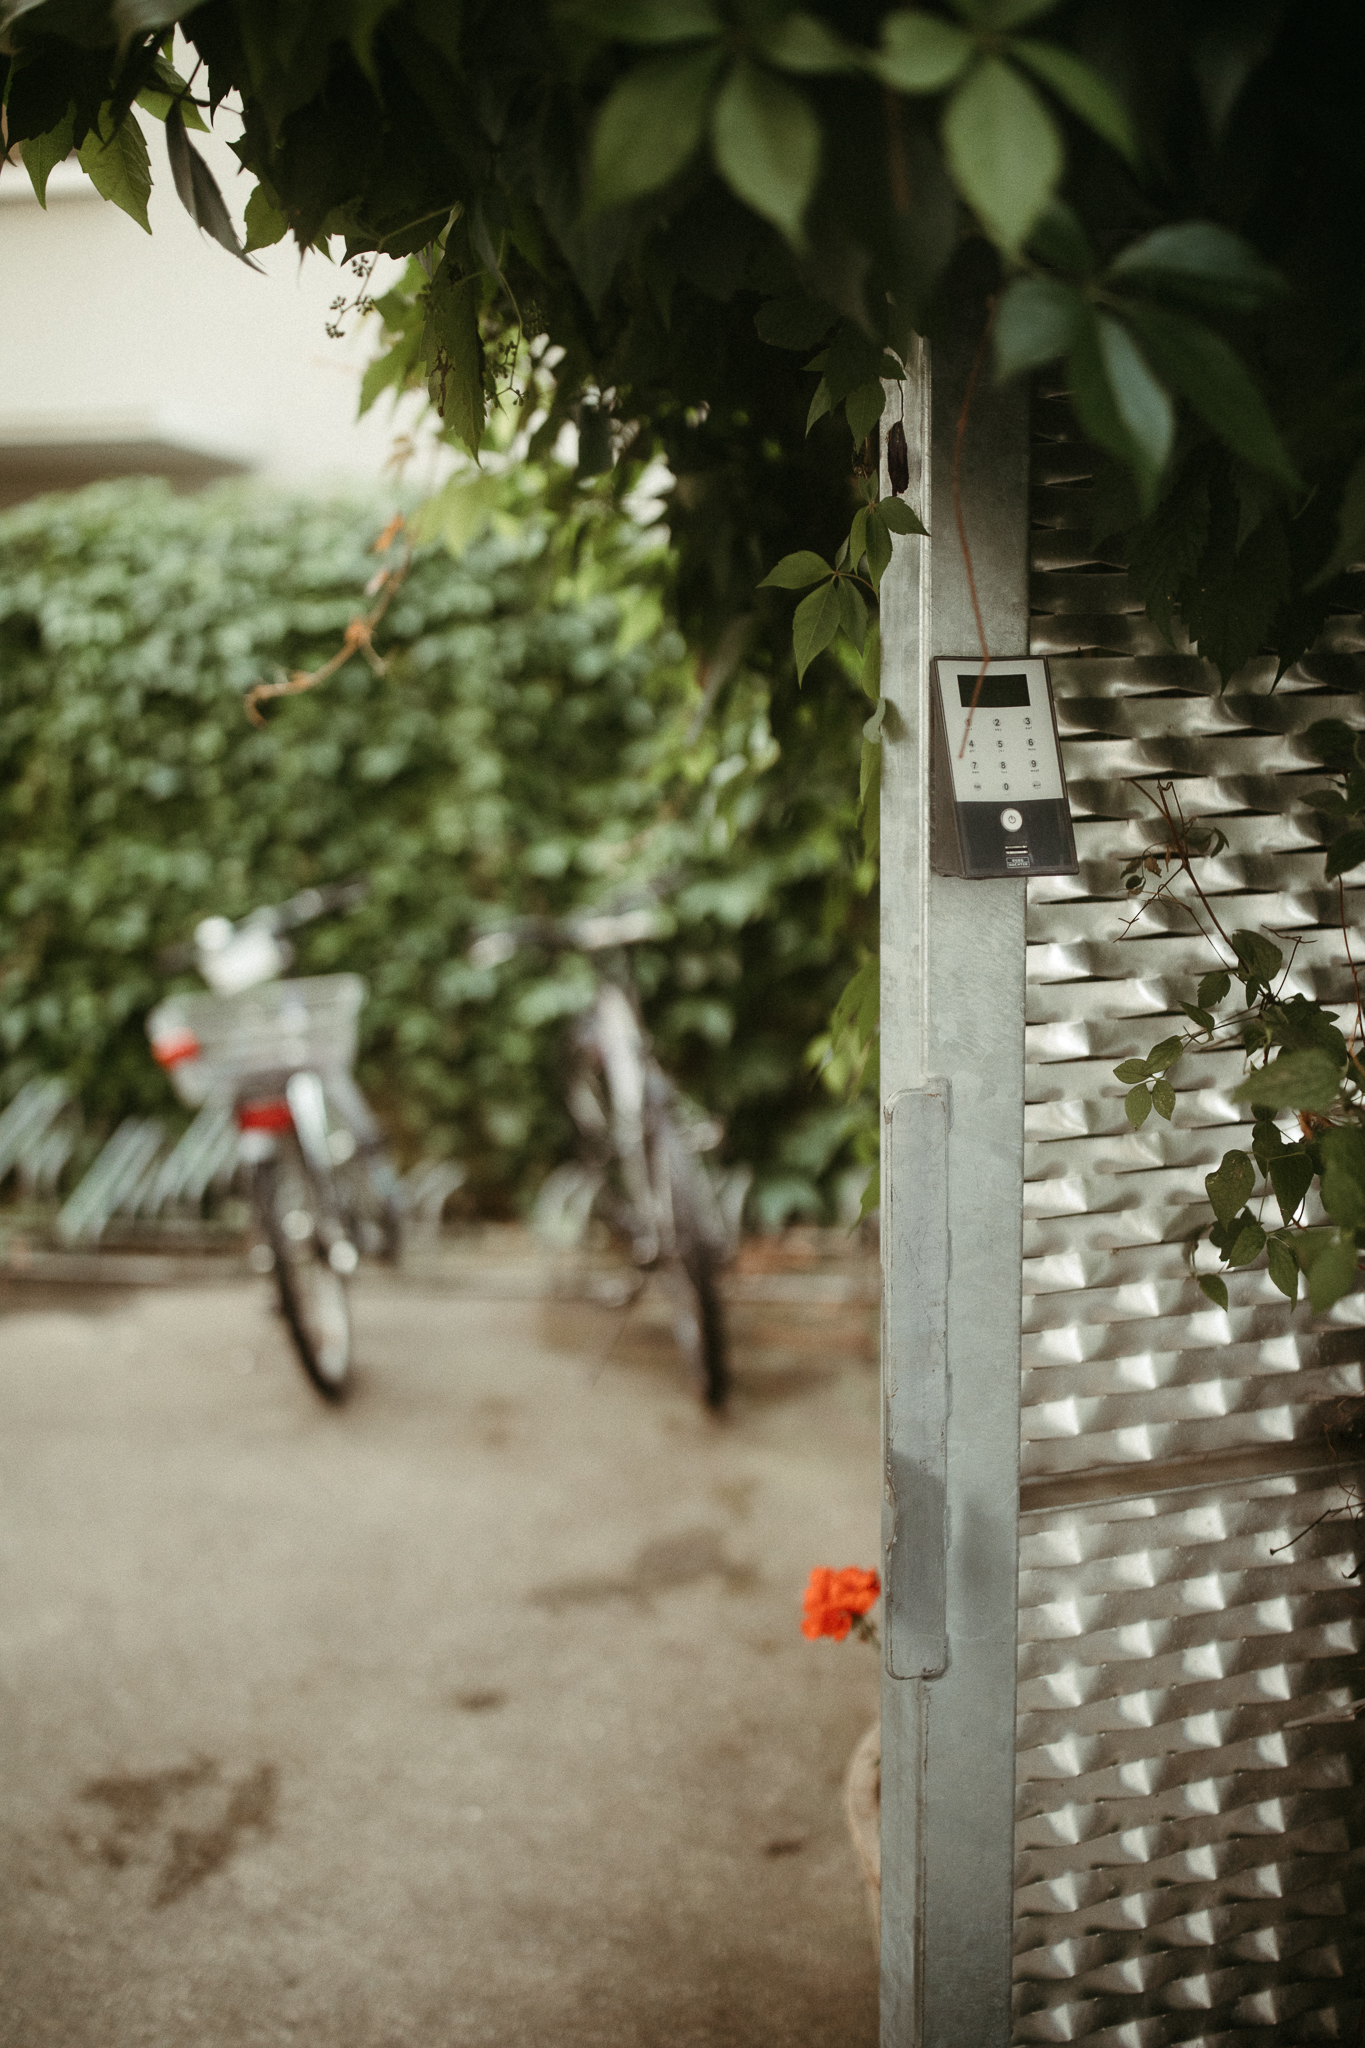 Fahrradplatz | Bike parking 